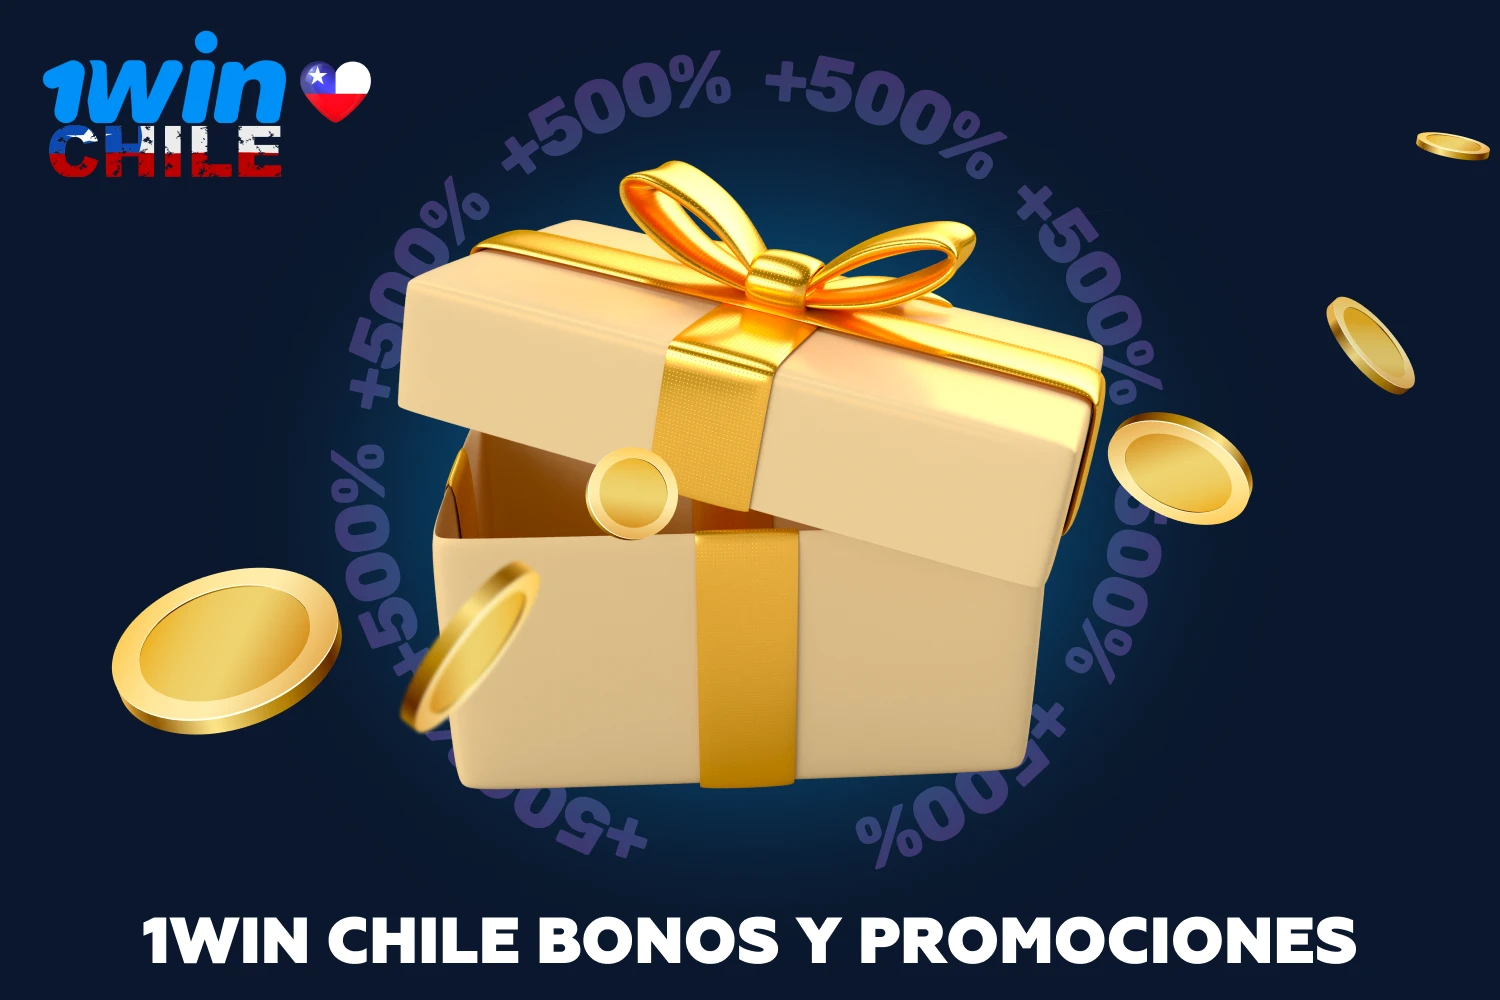 1win ofrece una amplia gama de bonos tanto a los nuevos usuarios chilenos como a los jugadores habituales